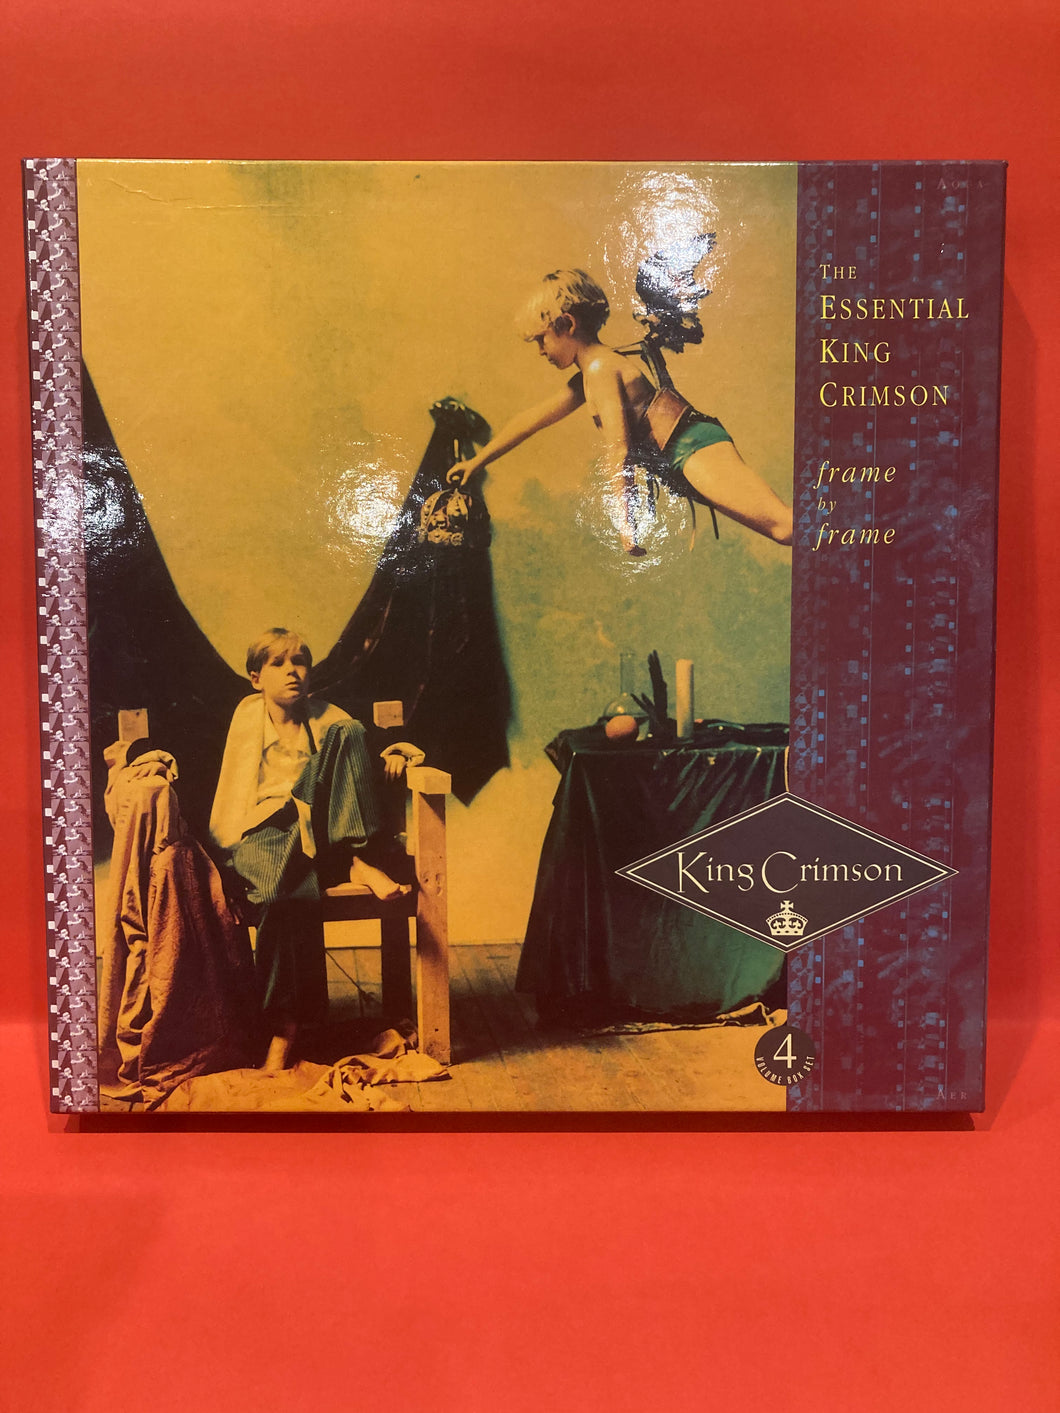 KING CRIMSON - FRAME BY FRAME - 4CD BOX SET